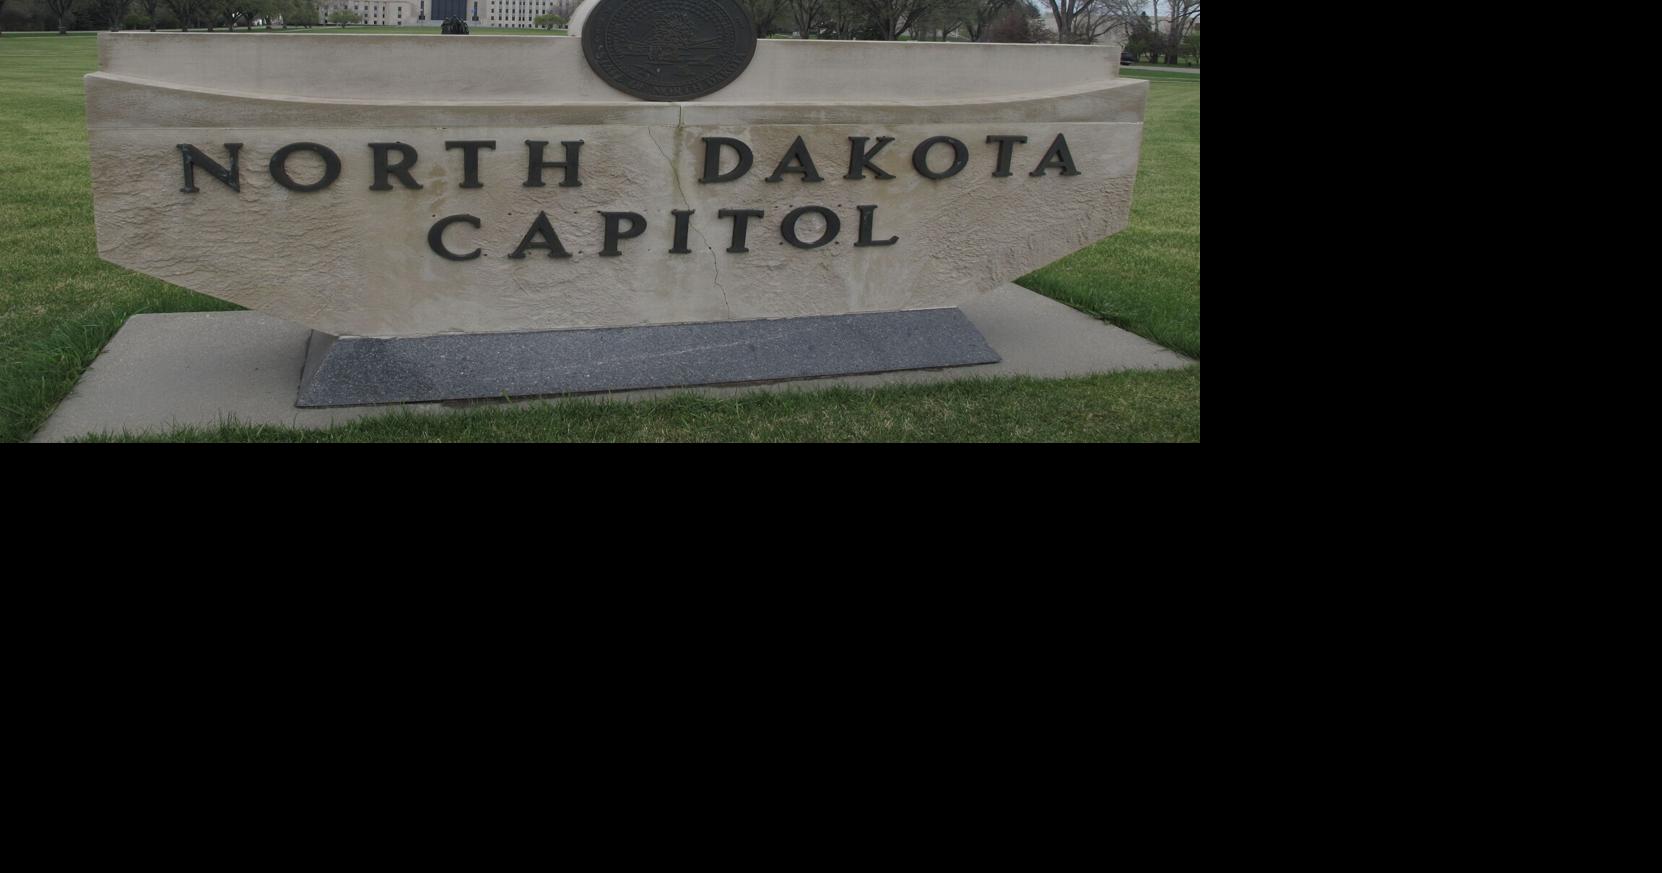 North Dakota officials monitoring water near fertilizer spill